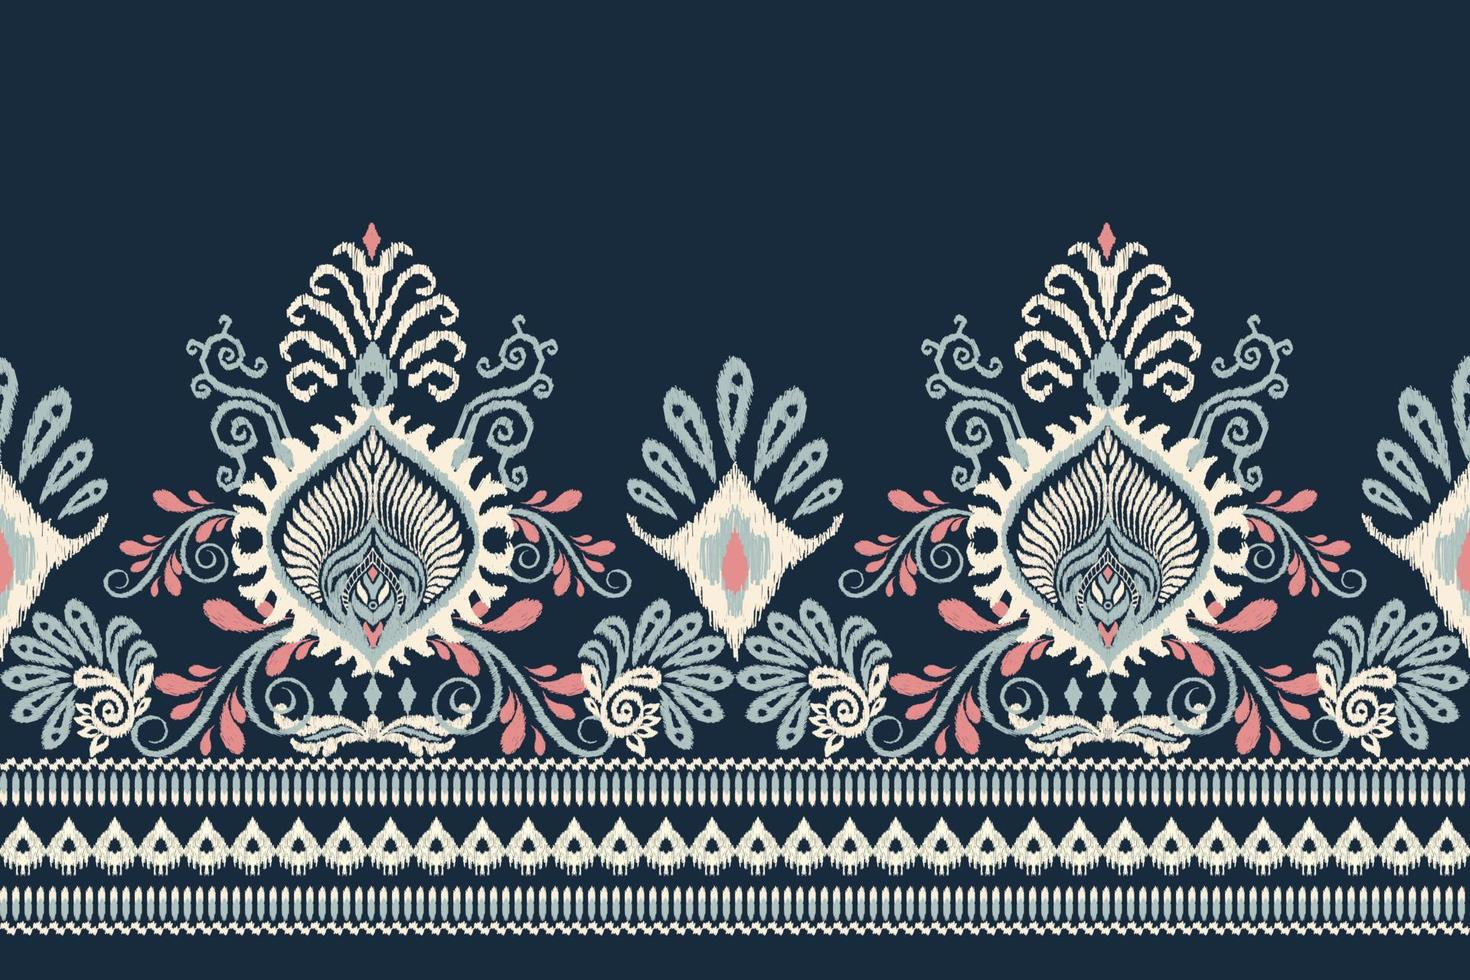 ikat floral paisley bordado em marinha azul plano de fundo.ikat étnico oriental padronizar tradicional.asteca estilo abstrato vetor ilustração.design para textura,tecido,vestuário,embrulho,decoração,canga.